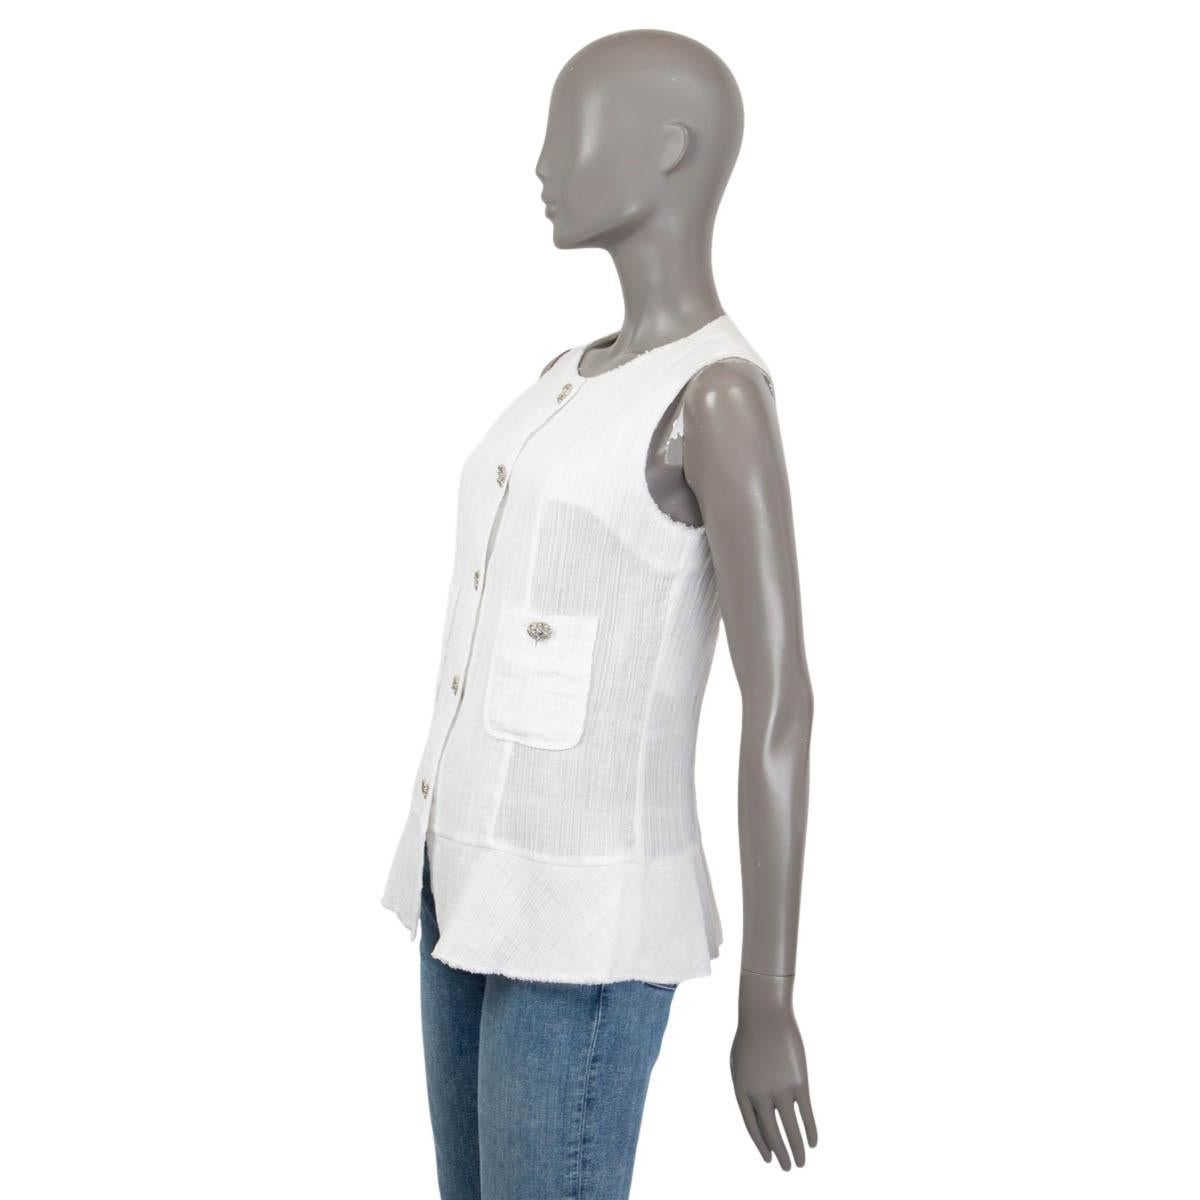 Women's CHANEL white cotton 2012 CRINKLED Sleeveless Blouse Shirt 42 L